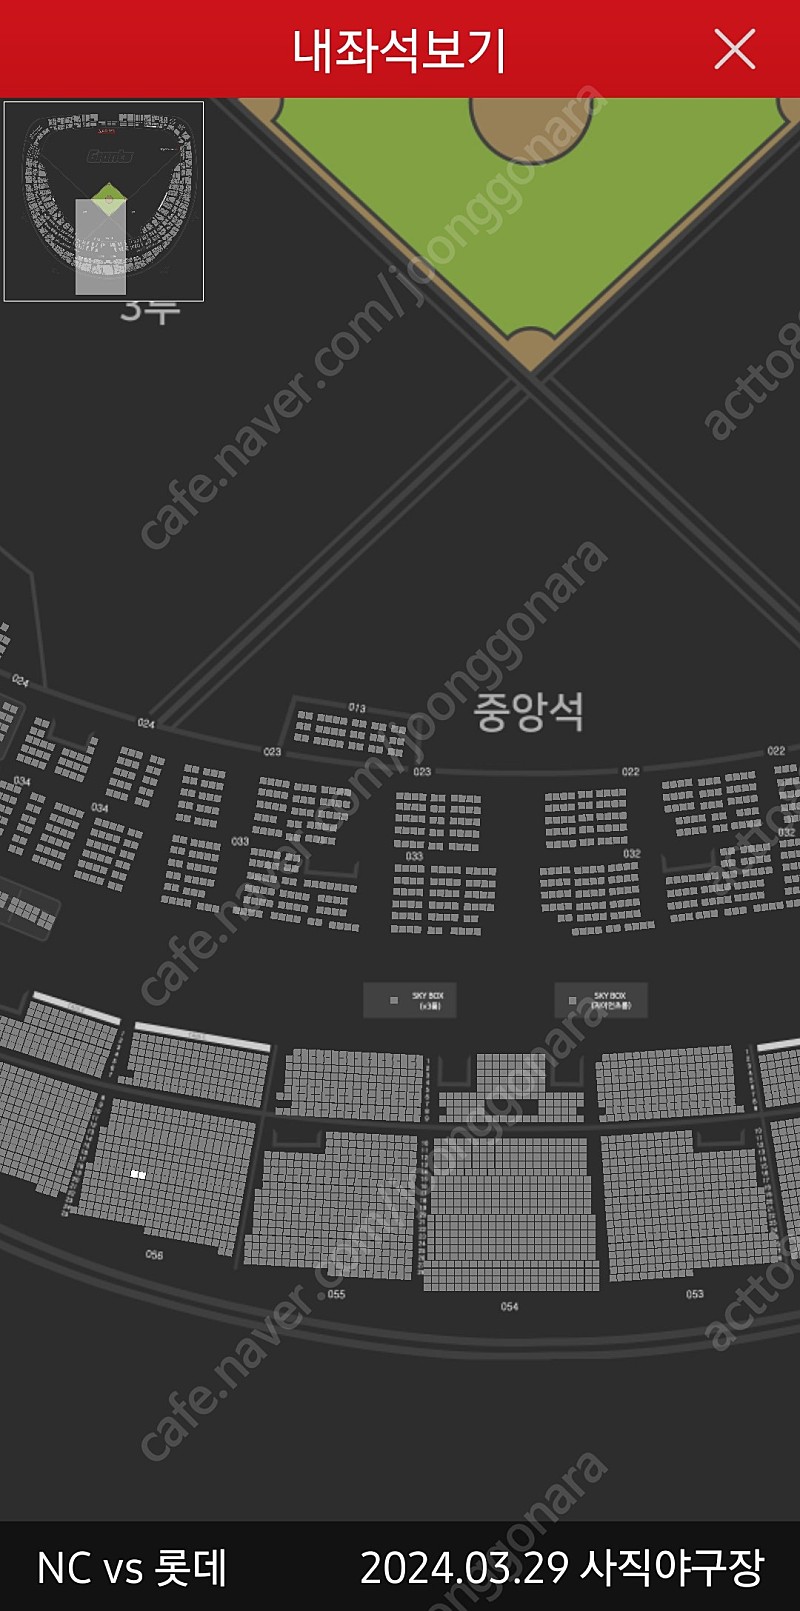 정가양도- 29일(금) 롯데자이언츠 부산 사직 홈개막전 중앙상단석 2연석